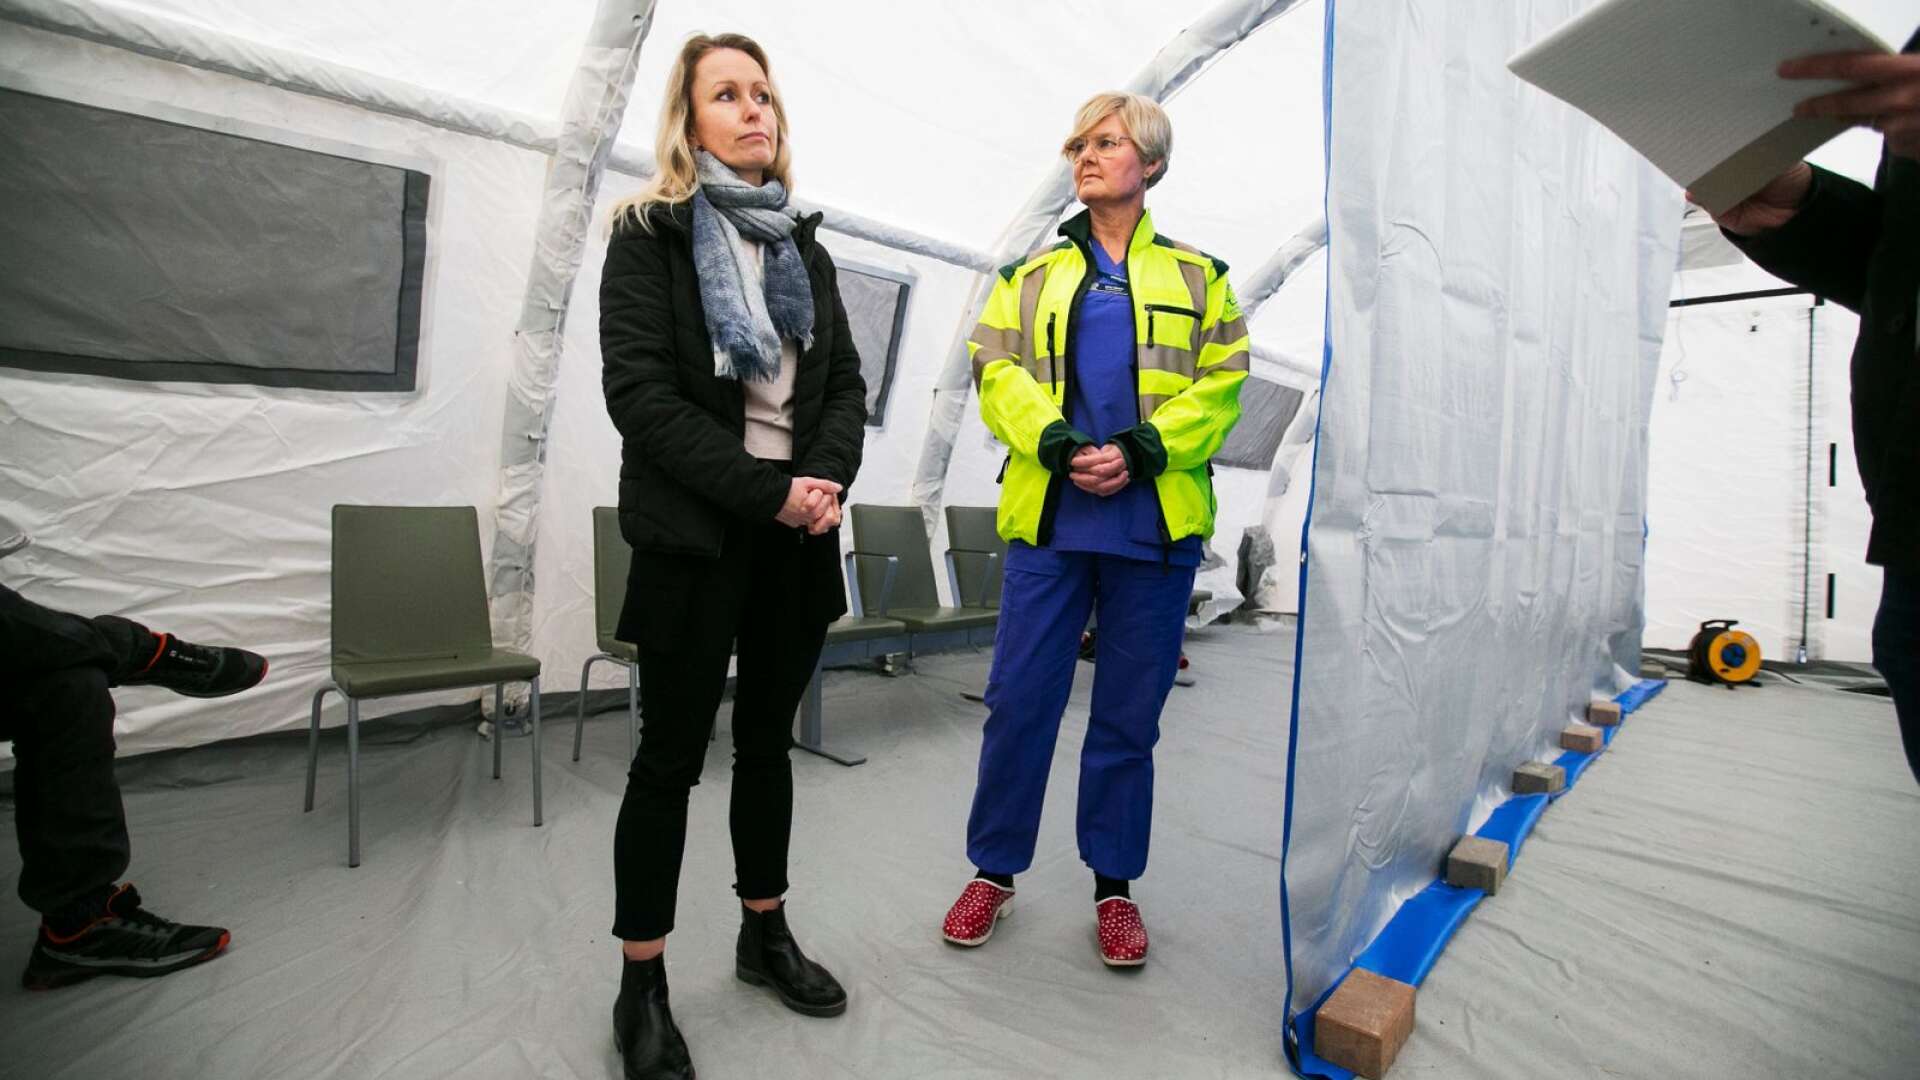  Anna Skogstam, biträdande smittskyddsläkare, och Ulrika Nilsson, verksamhetschef för akutmottagningen Karlstad, berättar om de nya tälten som satts upp utanför akutmottagningen vid ett flertal sjukhus i Värmland. 